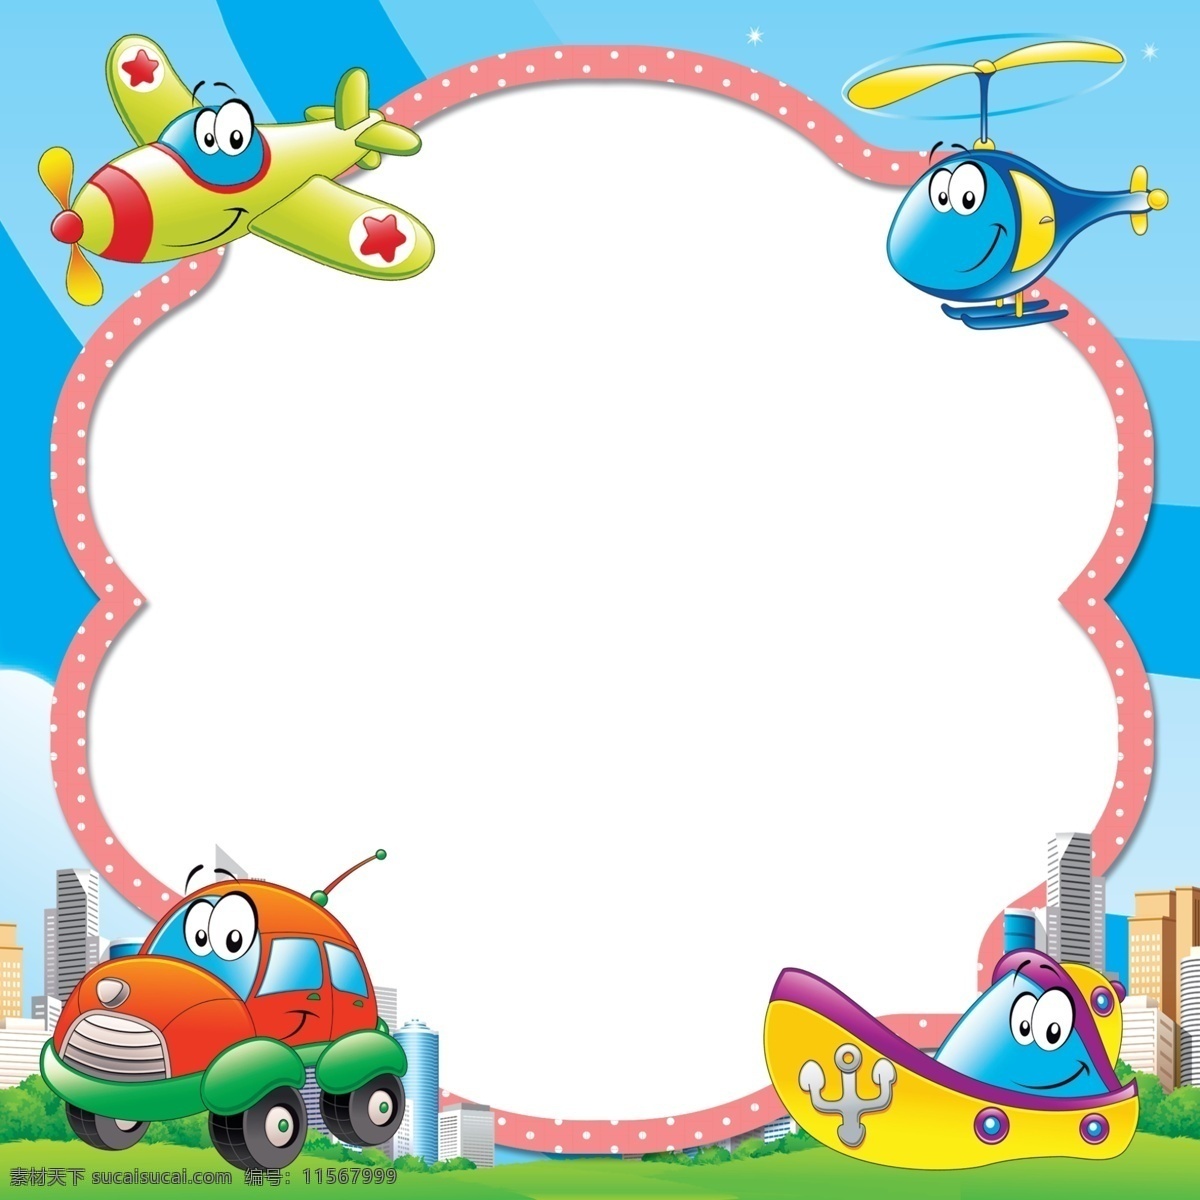 卡通飞机相框 飞机 儿童 气球 动物 相框 模版 可爱 卡通 底纹边框相框 卡通相框 底纹边框 边框相框